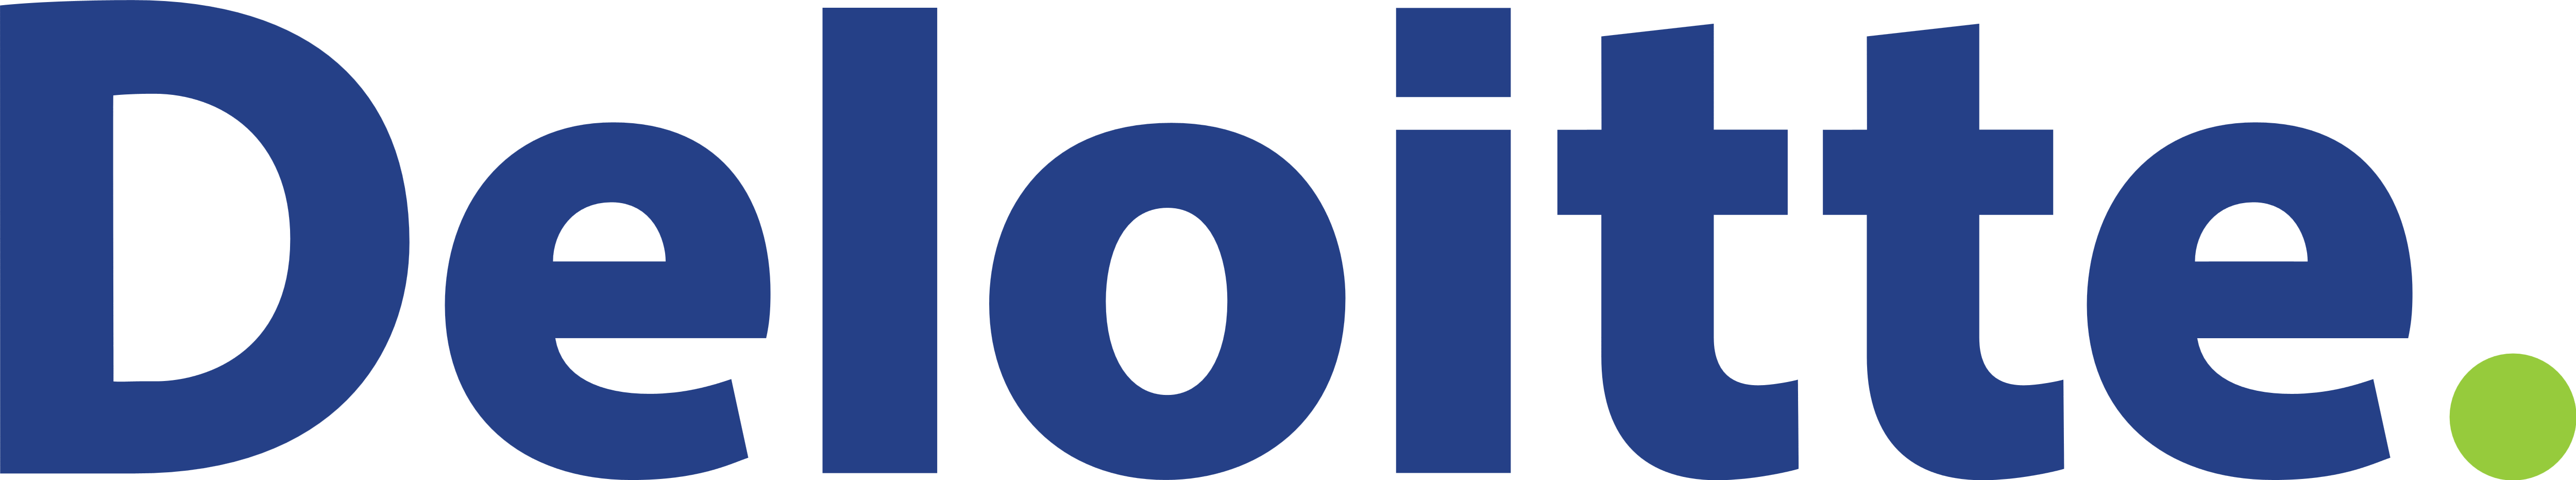 Deloitte Logo, FuturePeople